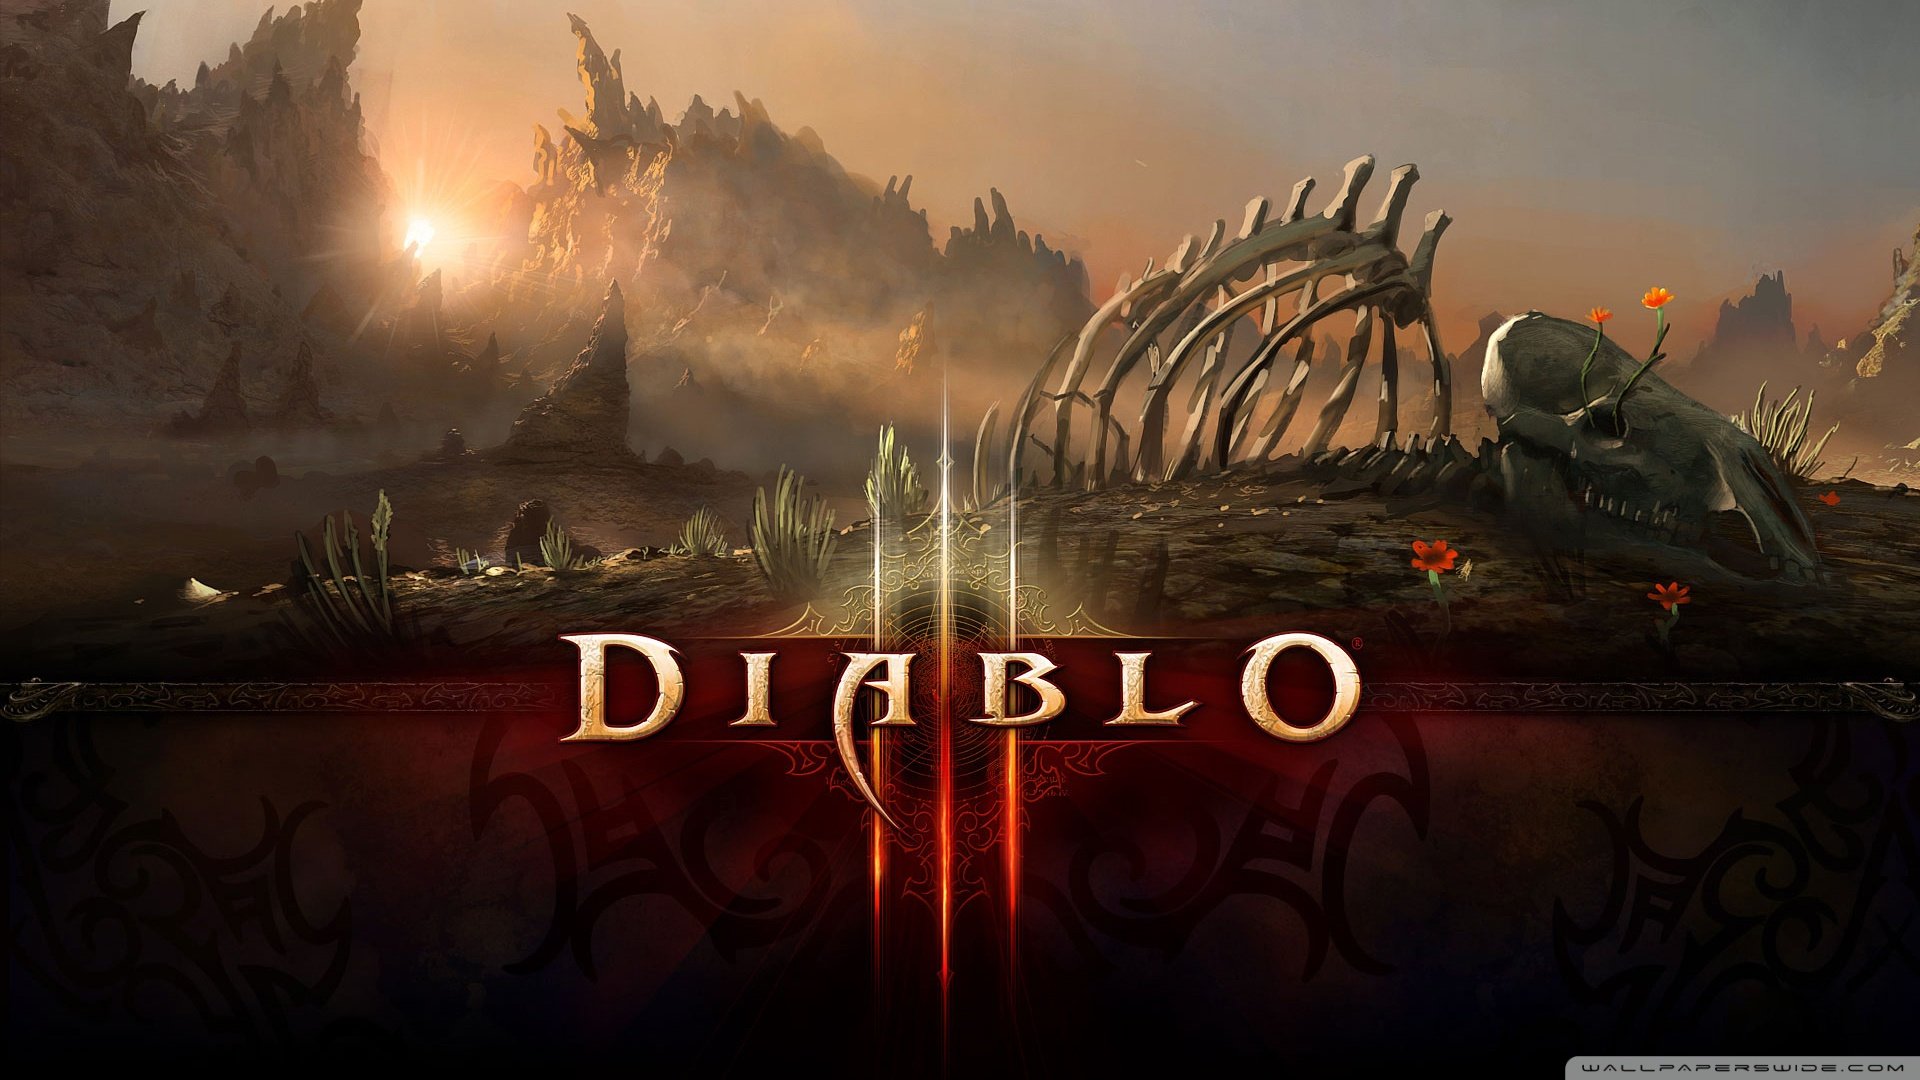 Diablo Game Wallpaper 1920x1080 Diablo Game